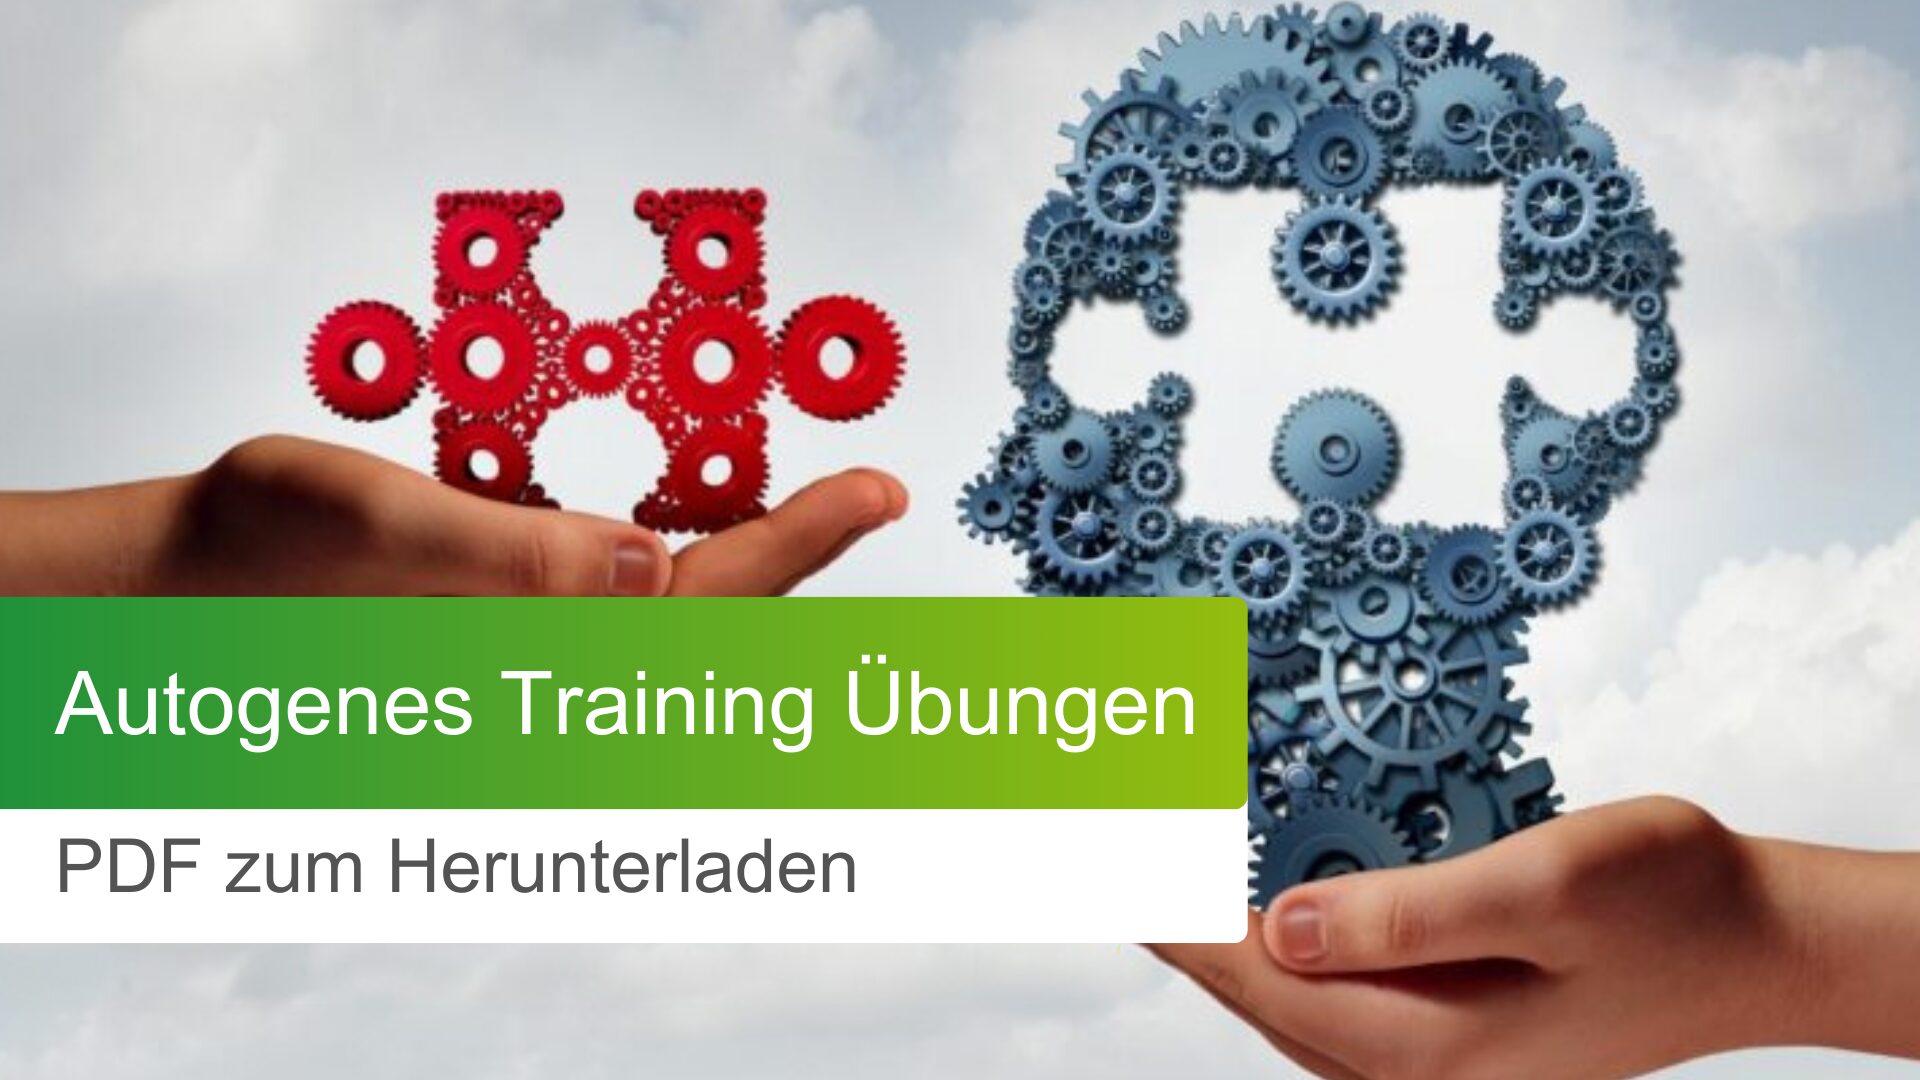 Autogenes Training: Übungen als PDF downloaden (gratis!)